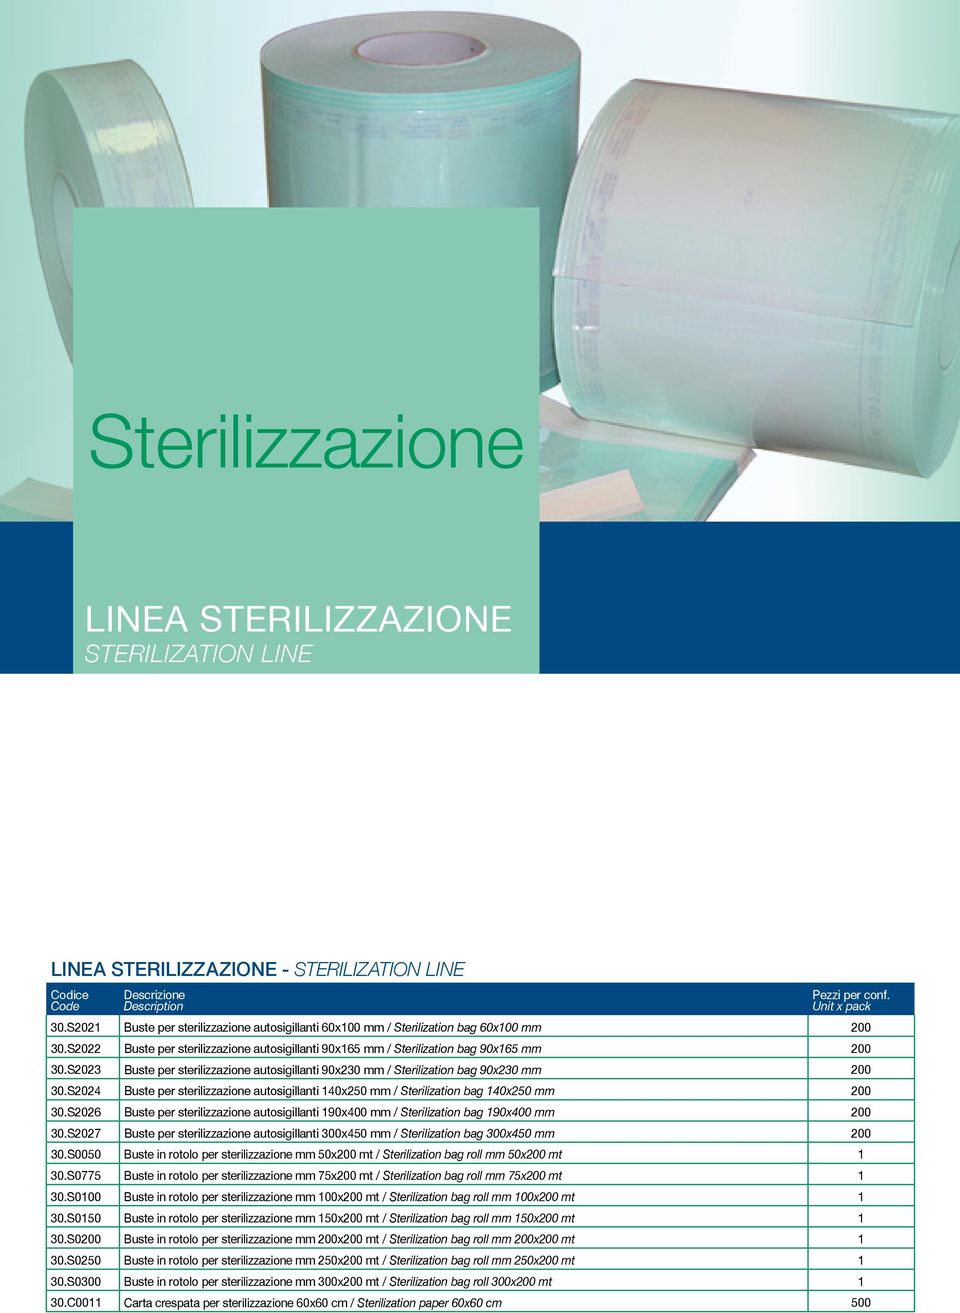 S2024 Buste per sterilizzazione autosigillanti 140x250 mm / Sterilization bag 140x250 mm 200 30.S2026 Buste per sterilizzazione autosigillanti 190x400 mm / Sterilization bag 190x400 mm 200 30.